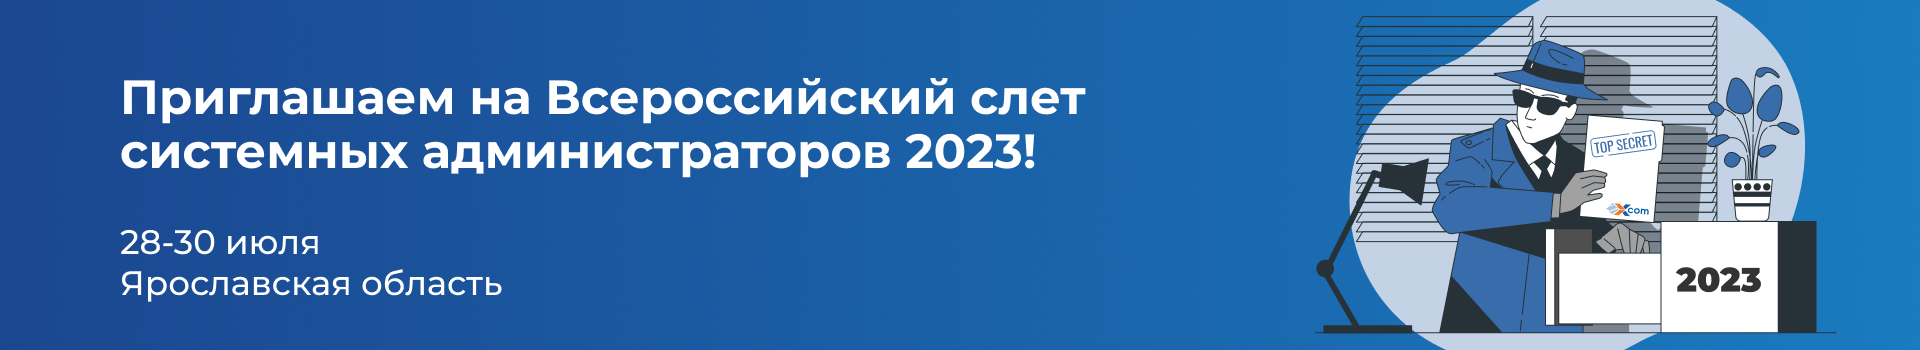 Приглашаем на Всероссийский слет системных администраторов 2023!